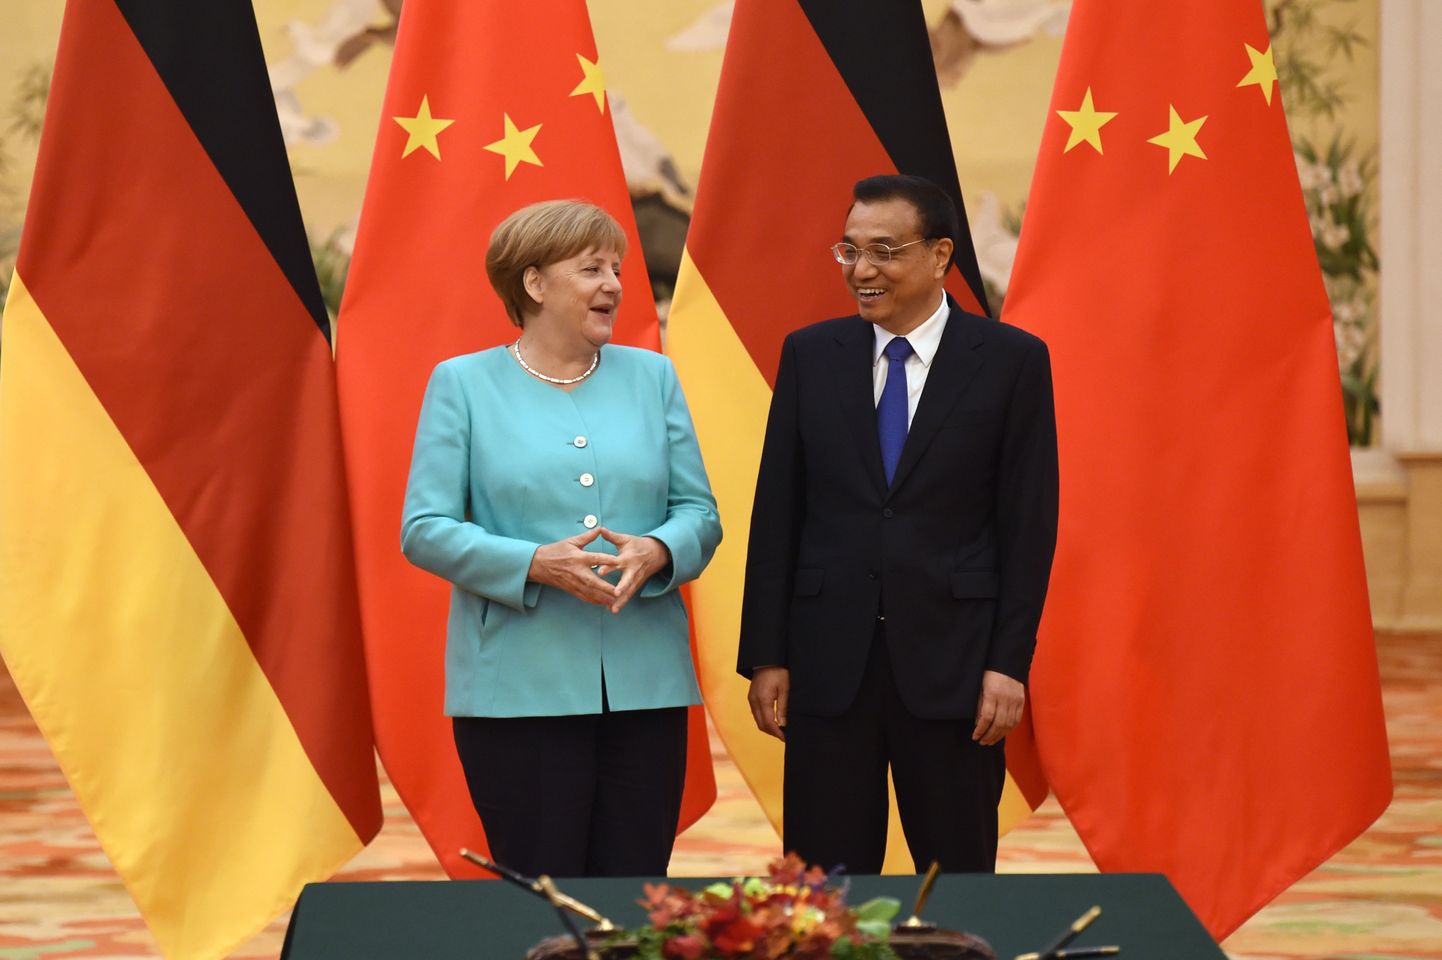 Saksa kantsler Angela Merkel täna Hiina peaministri Li Keqiangiga kohtumas.